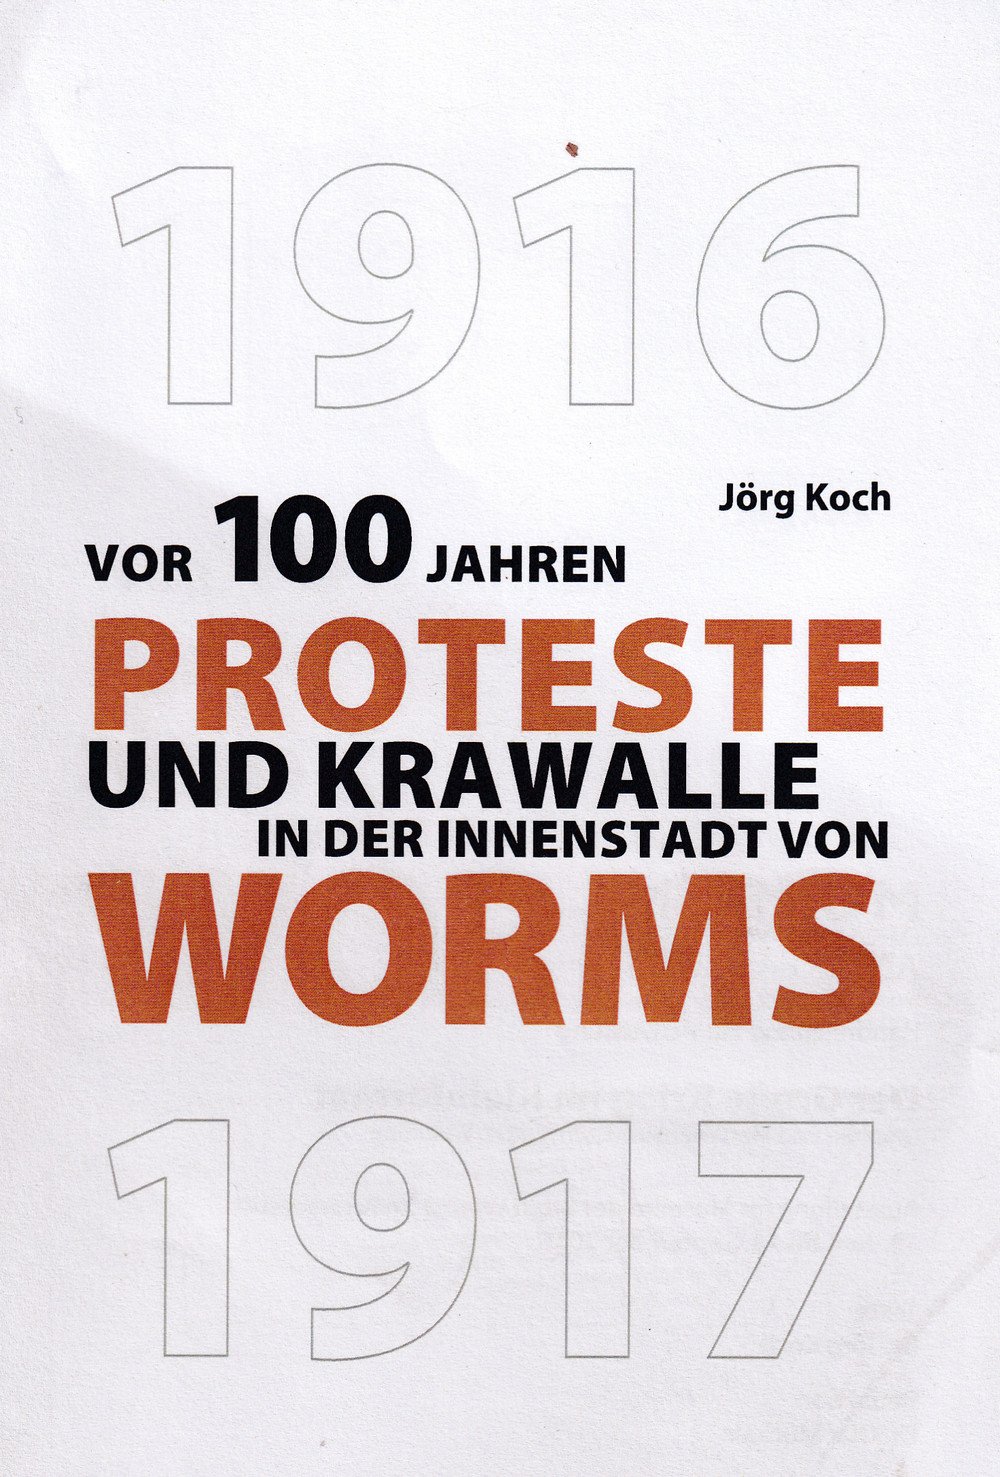 Proteste und Krawalle Worms (Kulturverein Guntersblum CC BY-NC-SA)